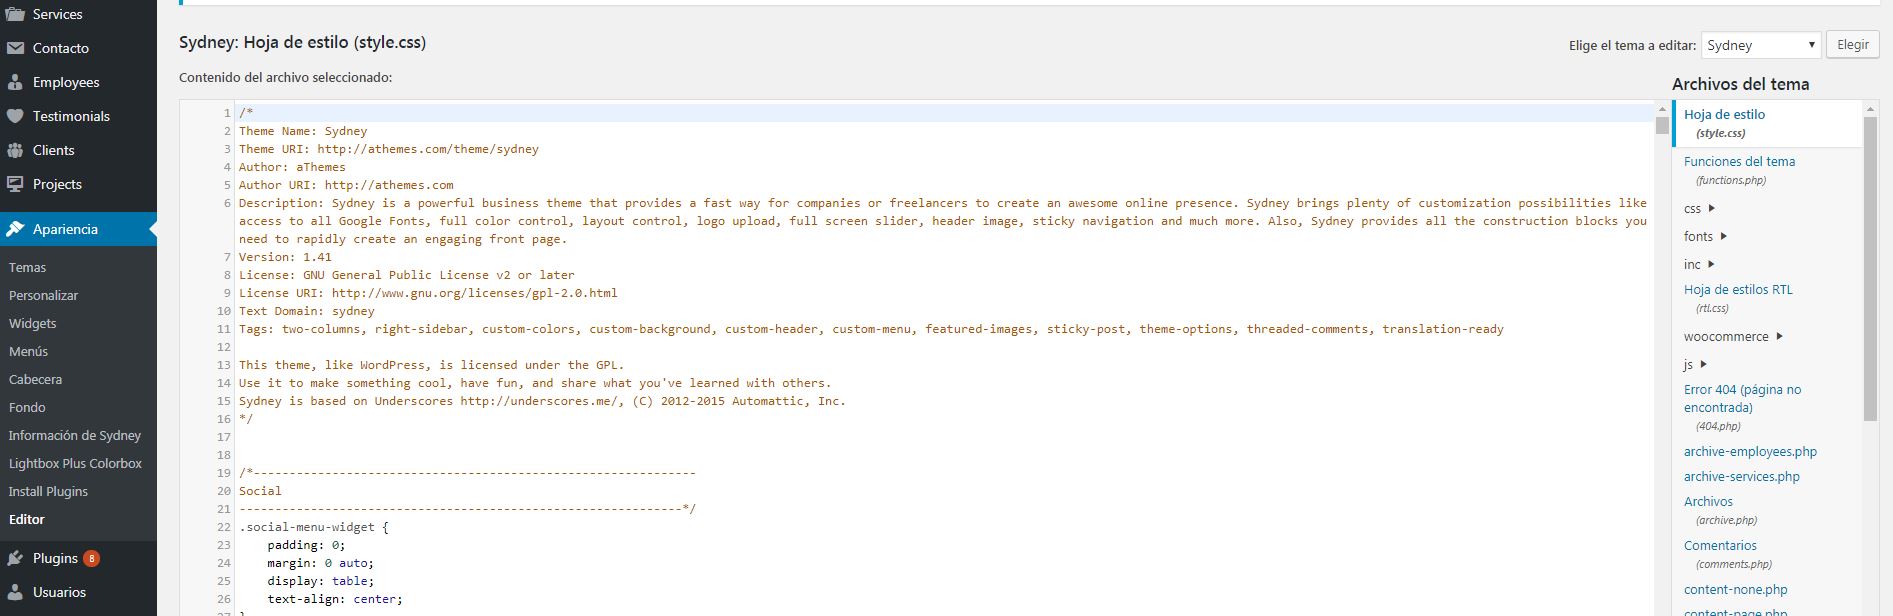 Archivos de tema código cambios en wordpress 4.9